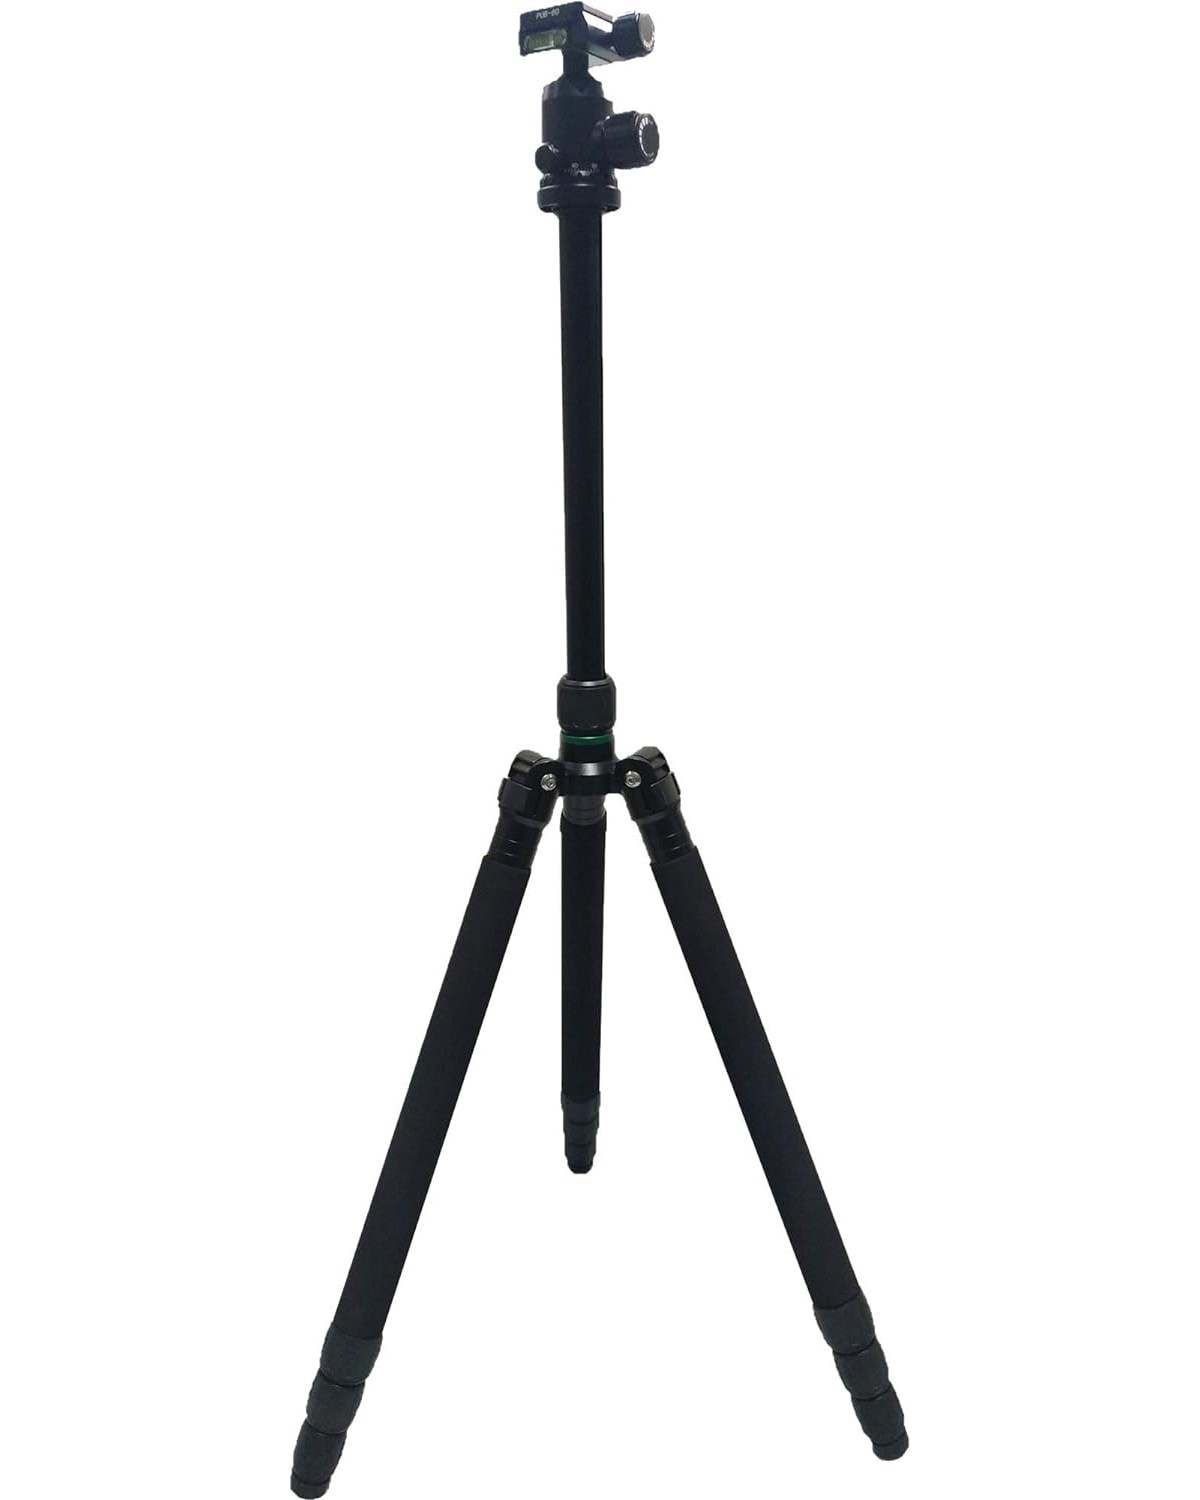 1850 offen Höhe mm DS-2907ZJ Schwarz, HIKVISION Kamerastativ, bis 30kg Stativ